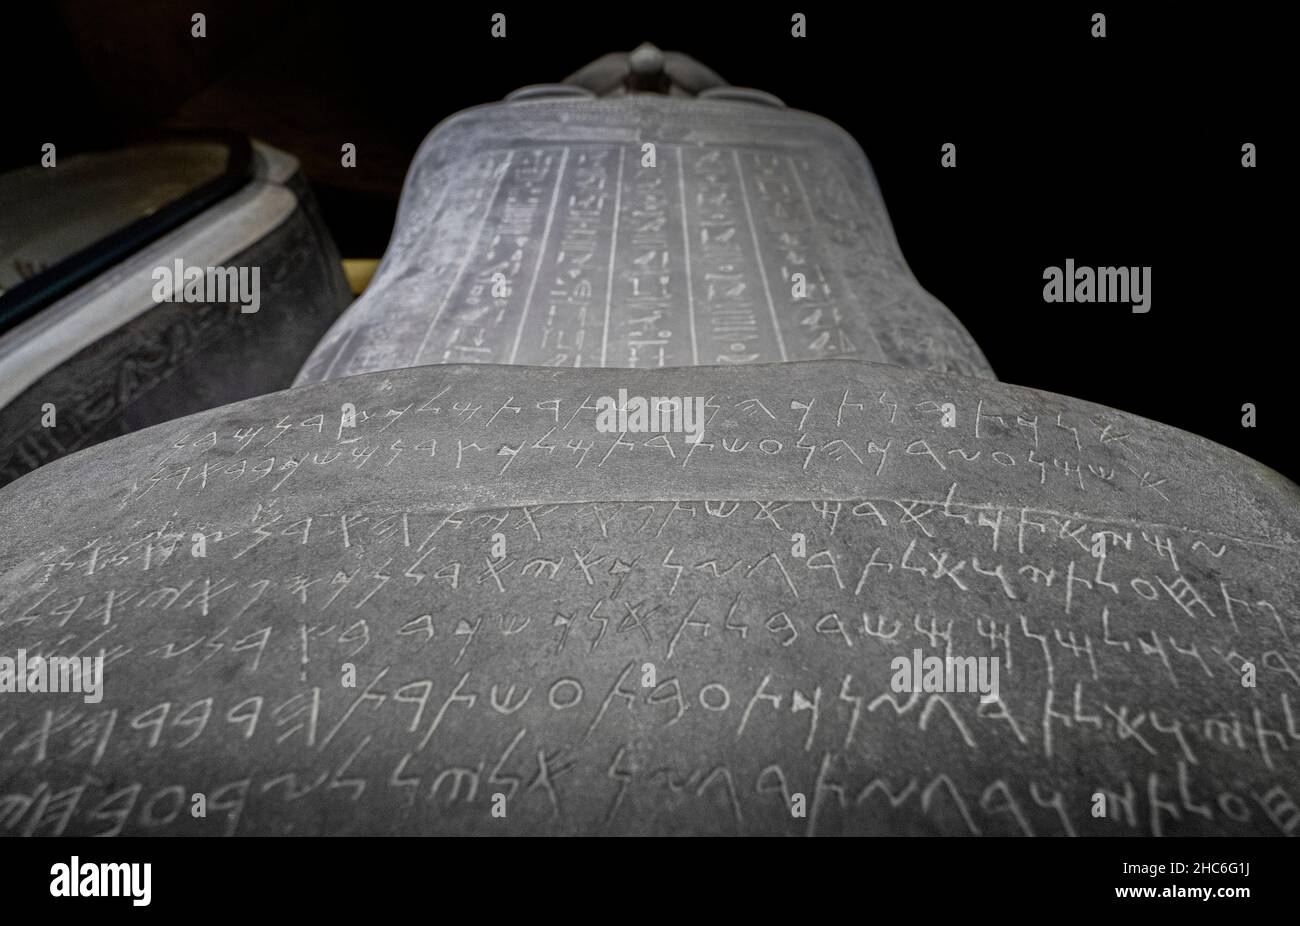 Detailansicht eines ägyptischen Sarkophags. Istanbul Archäologisches Museum, Türkei. Stockfoto